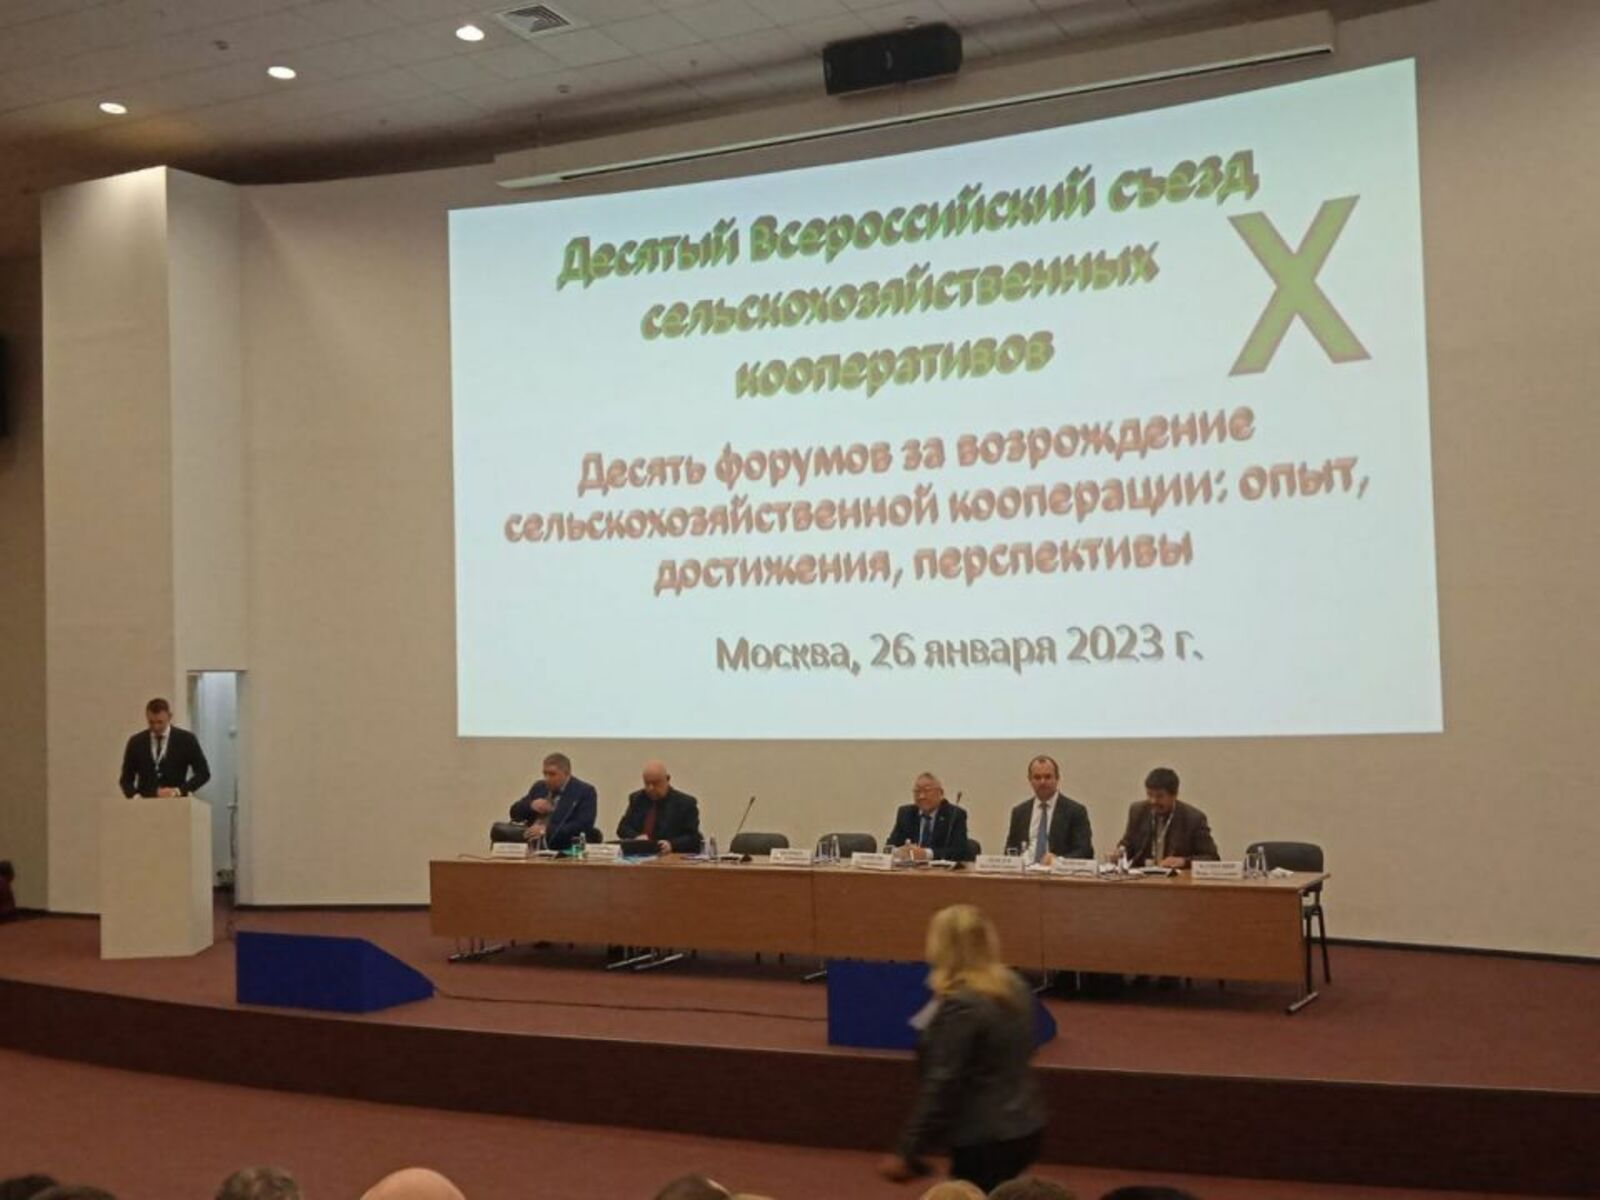 Опыт Башкортостана представили на Всероссийском съезде сельхозкооперативов